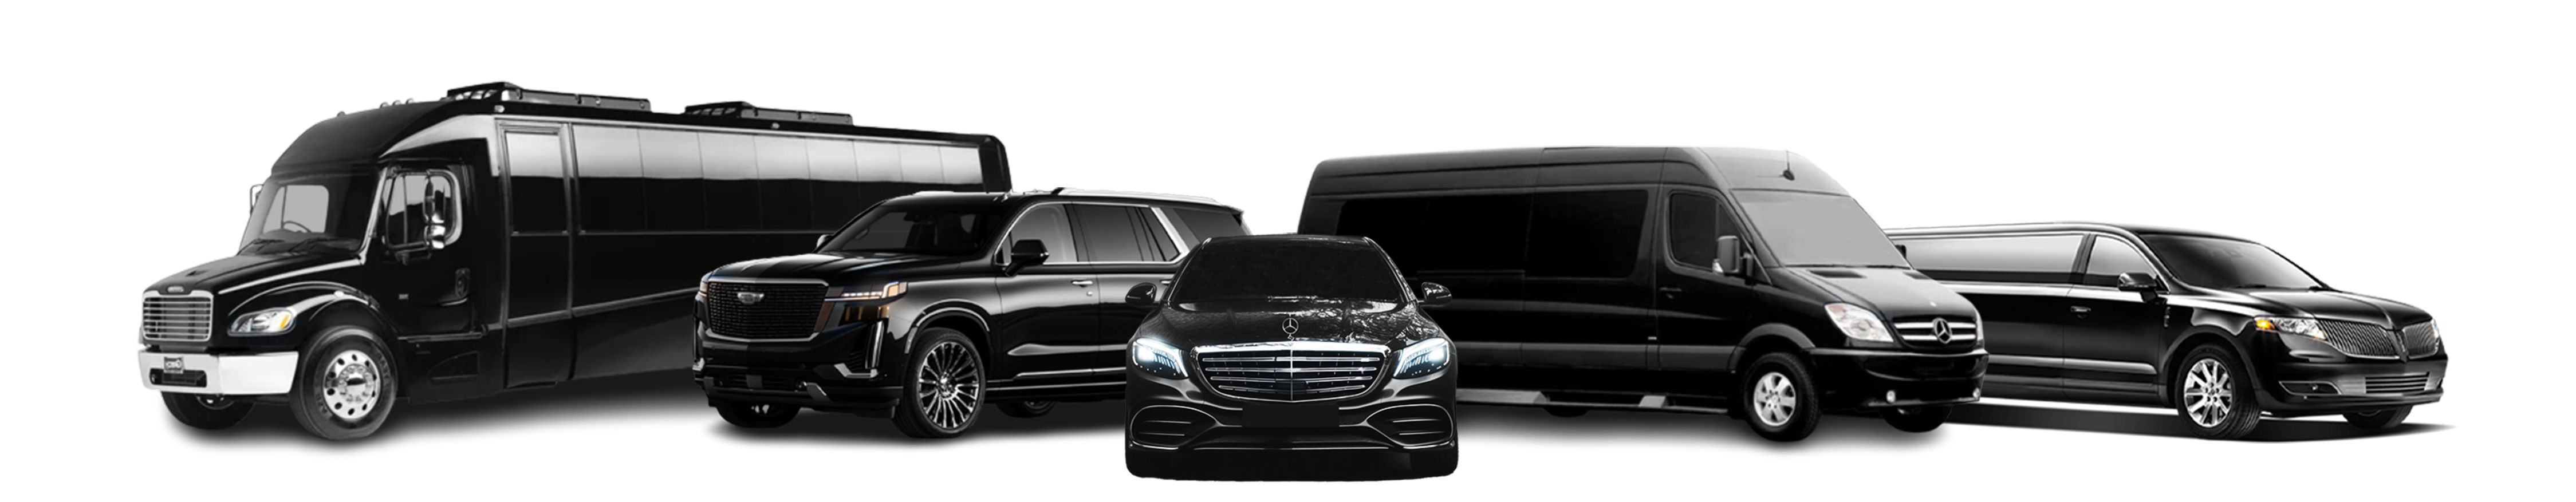 uploads/home/limousine_fleet_1682495116.png